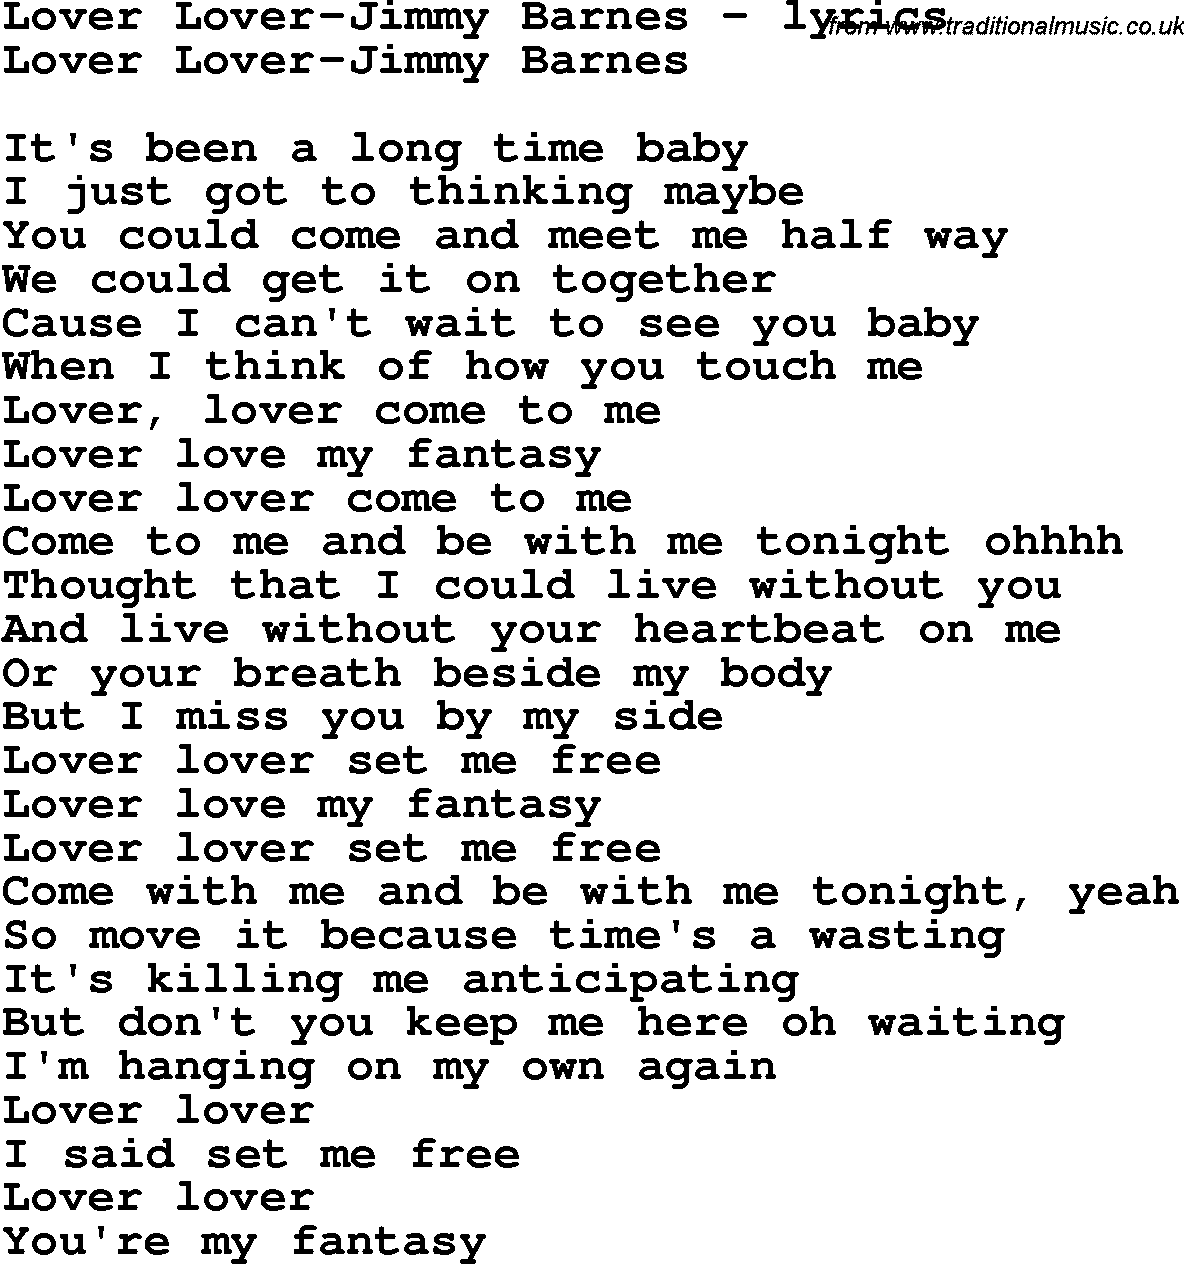 Love Song Lyrics for: Lover Lover-Jimmy Barnes